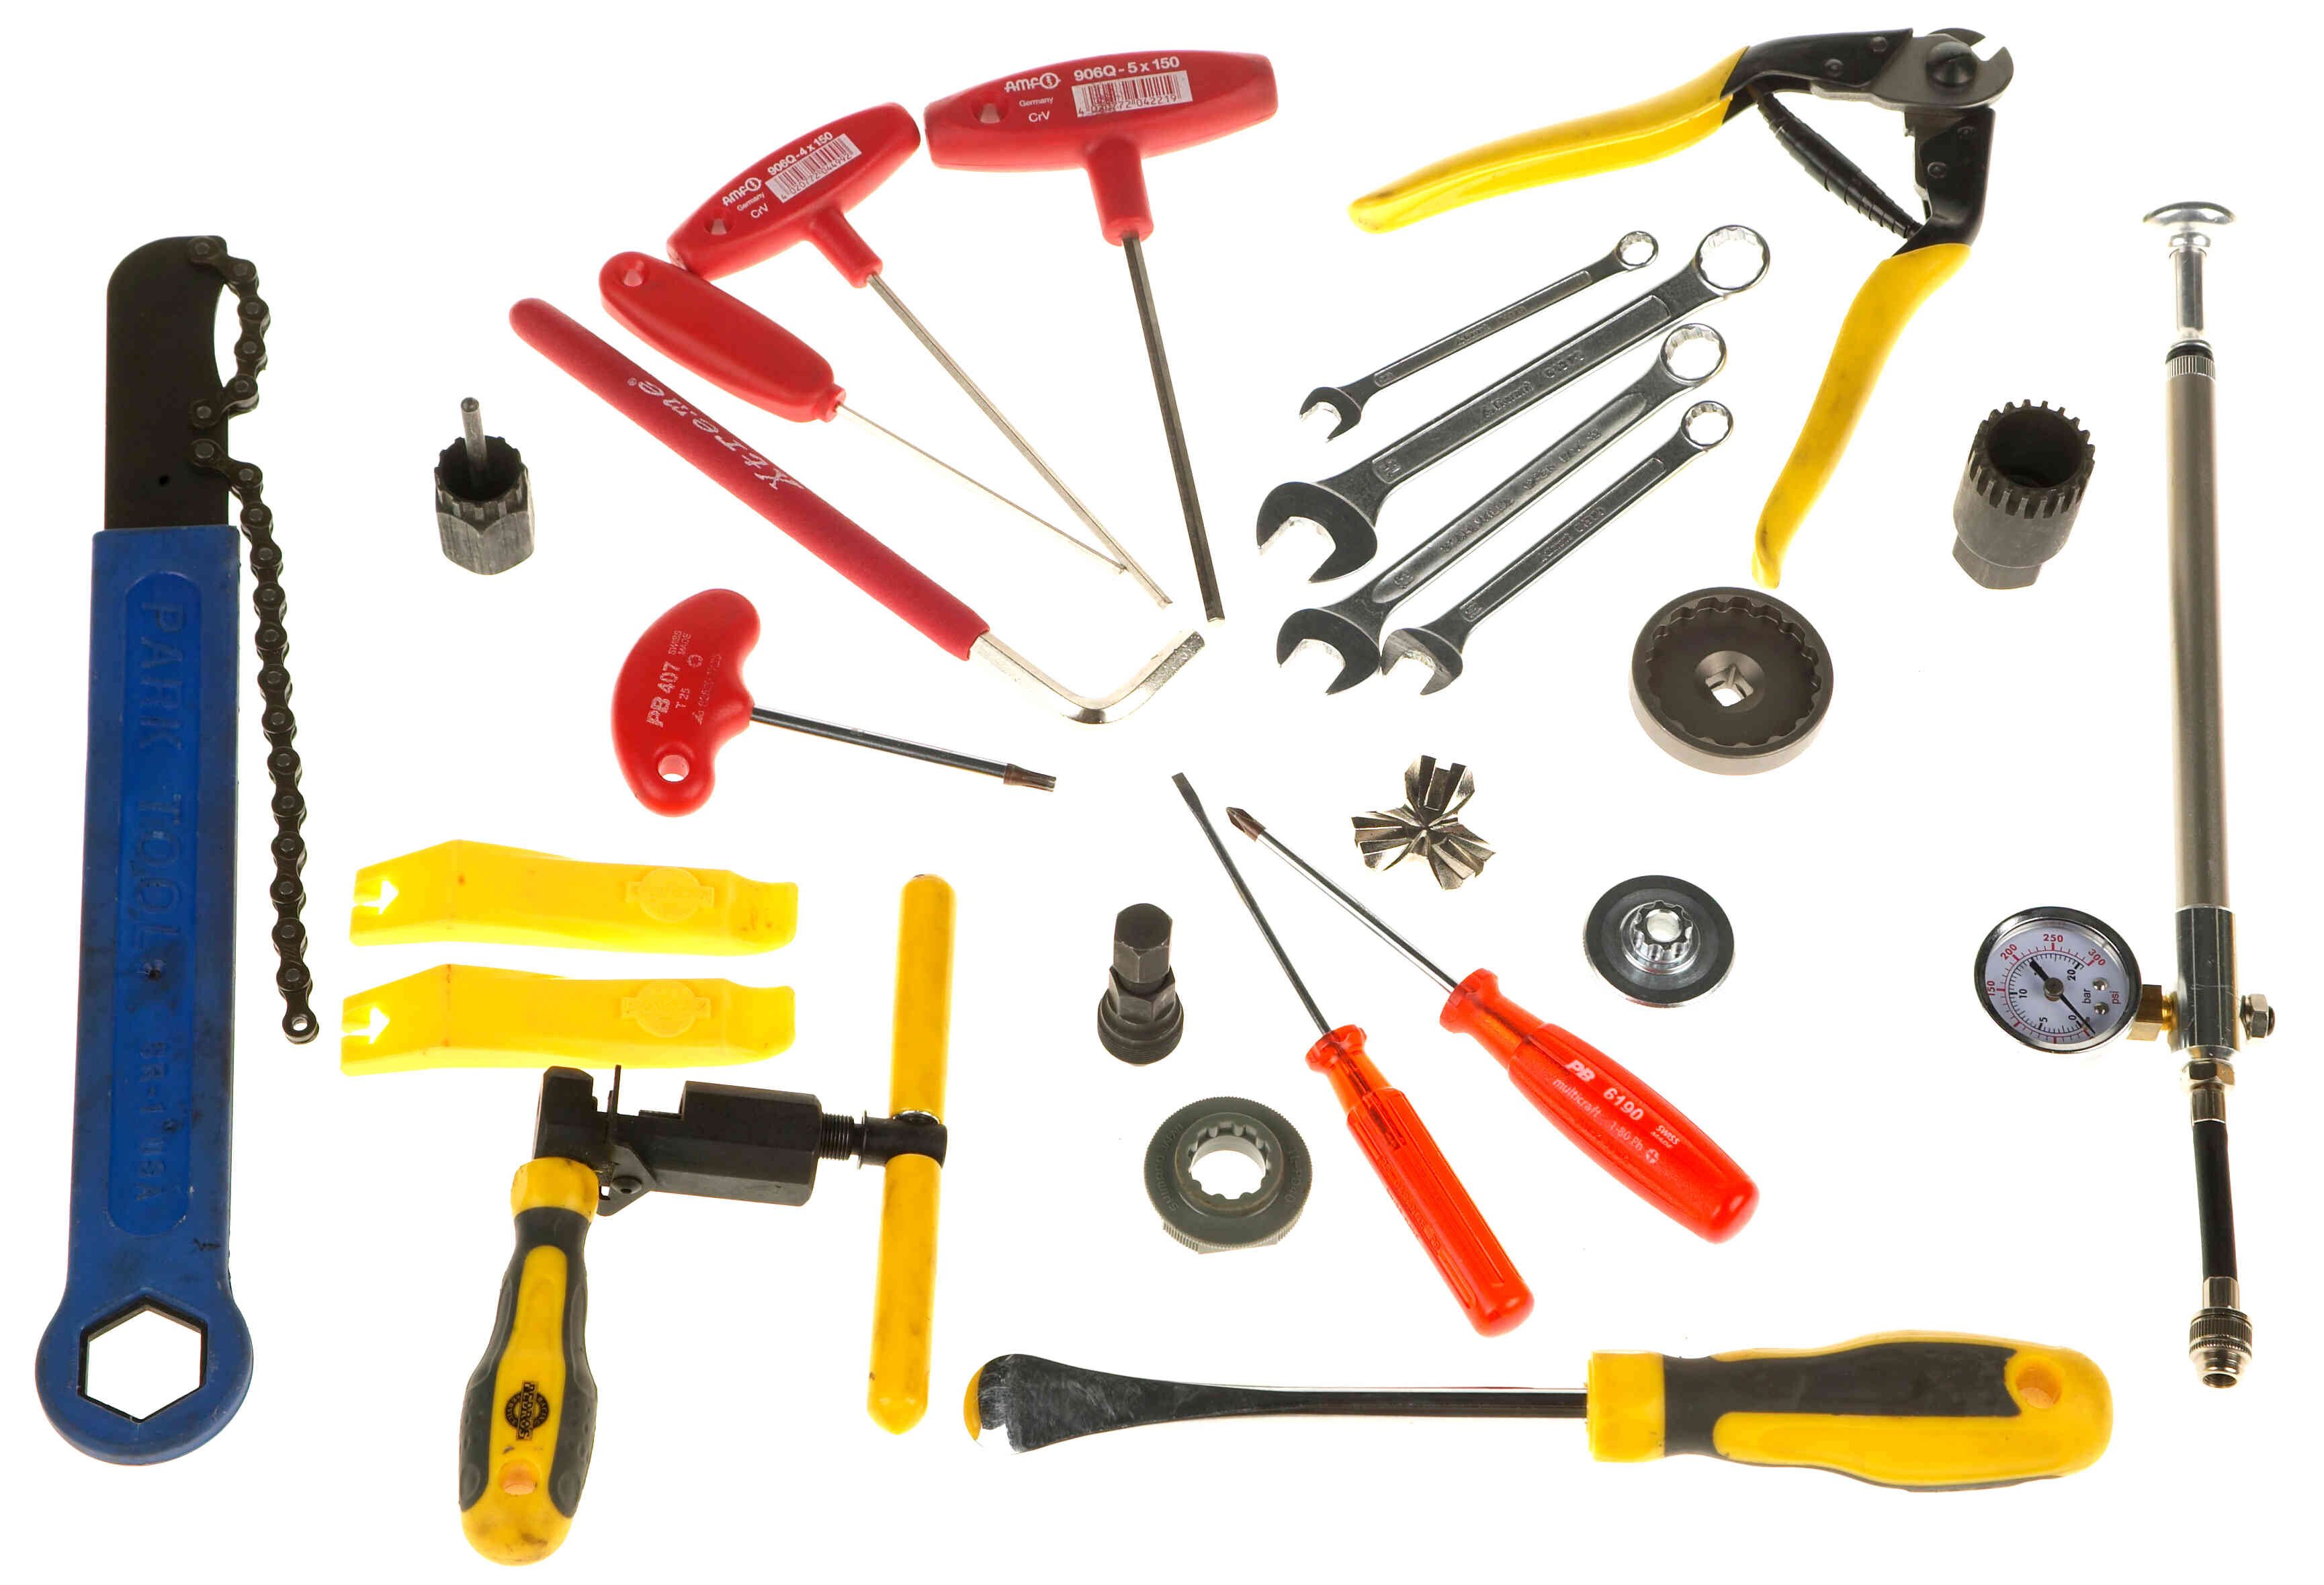 Werkzeuge für die Autoreparatur: Diese 10 Werkzeuge sollten Sie besitzen